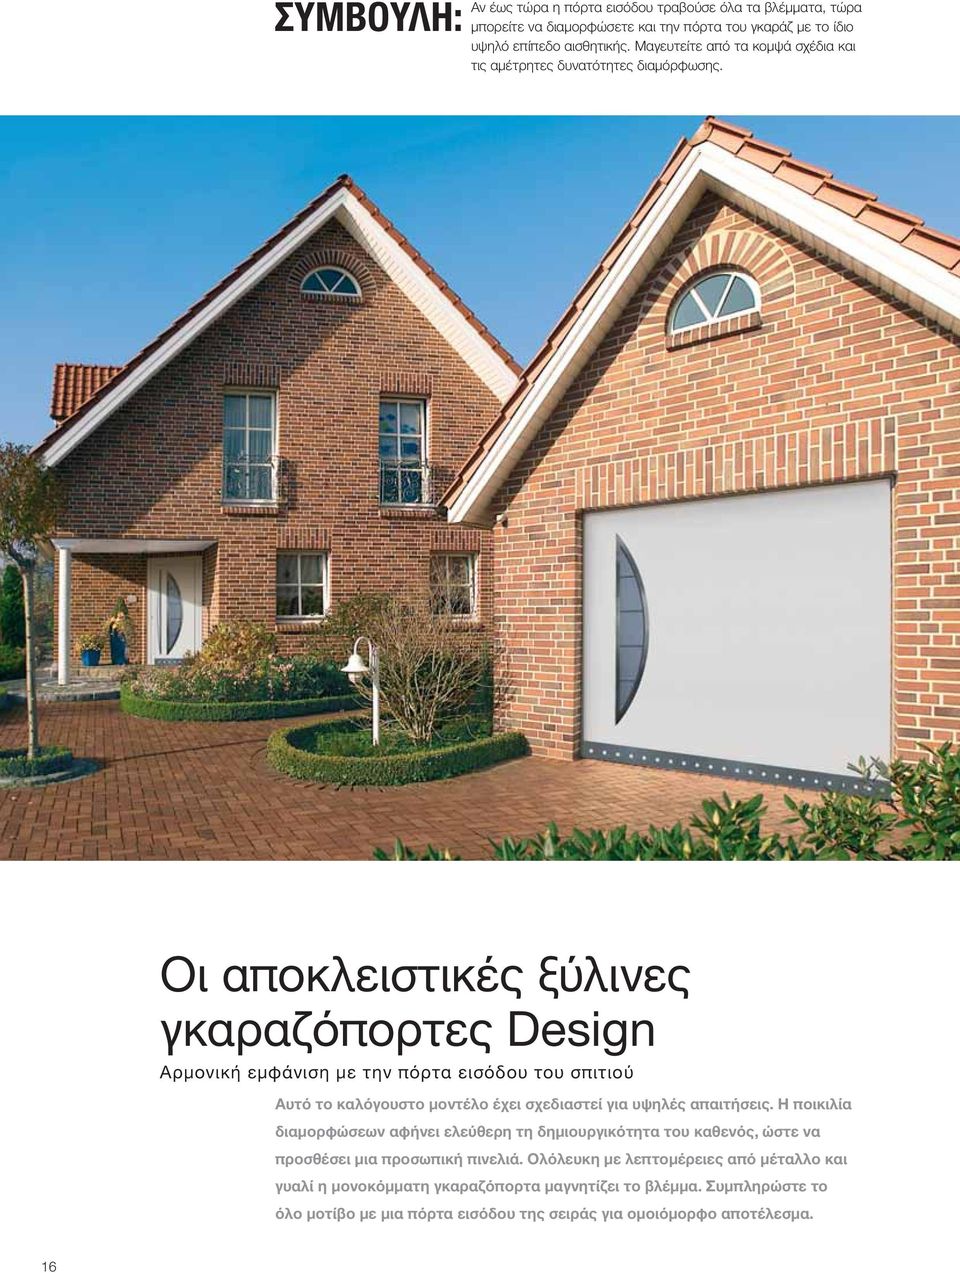 Οι αποκλειστικές ξύλινες γκαραζόπορτες Design Αρμονική εμφάνιση με την πόρτα εισόδου του σπιτιού Αυτό το καλόγουστο μοντέλο έχει σχεδιαστεί για υψηλές απαιτήσεις.